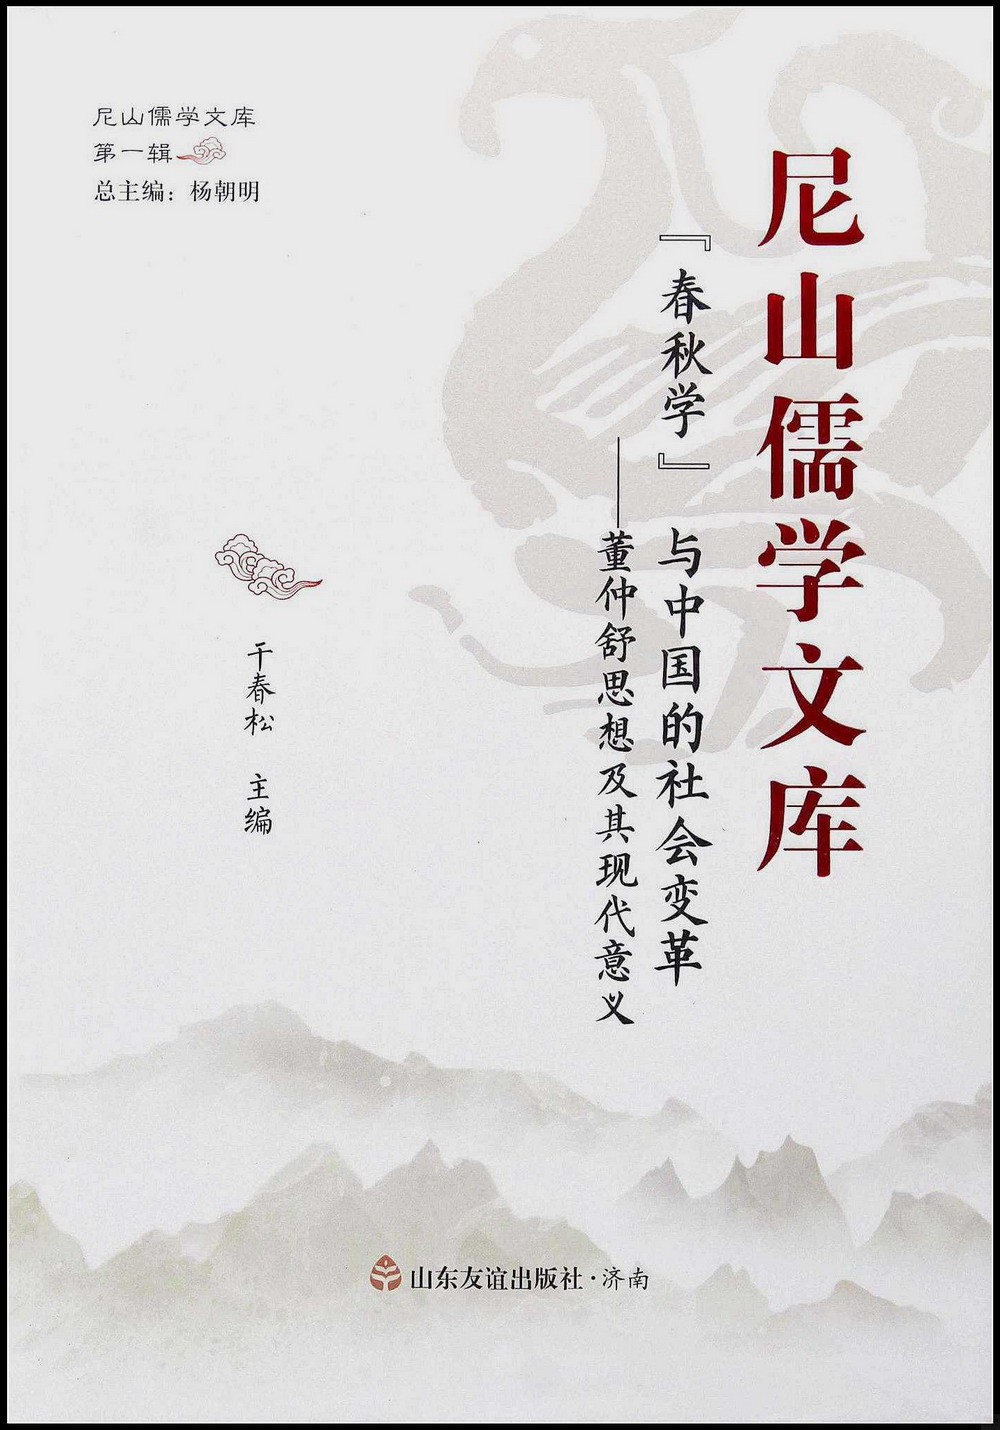 尼山儒學文庫：“春秋學”與中國的社會變革--董仲舒思想及其現代意義